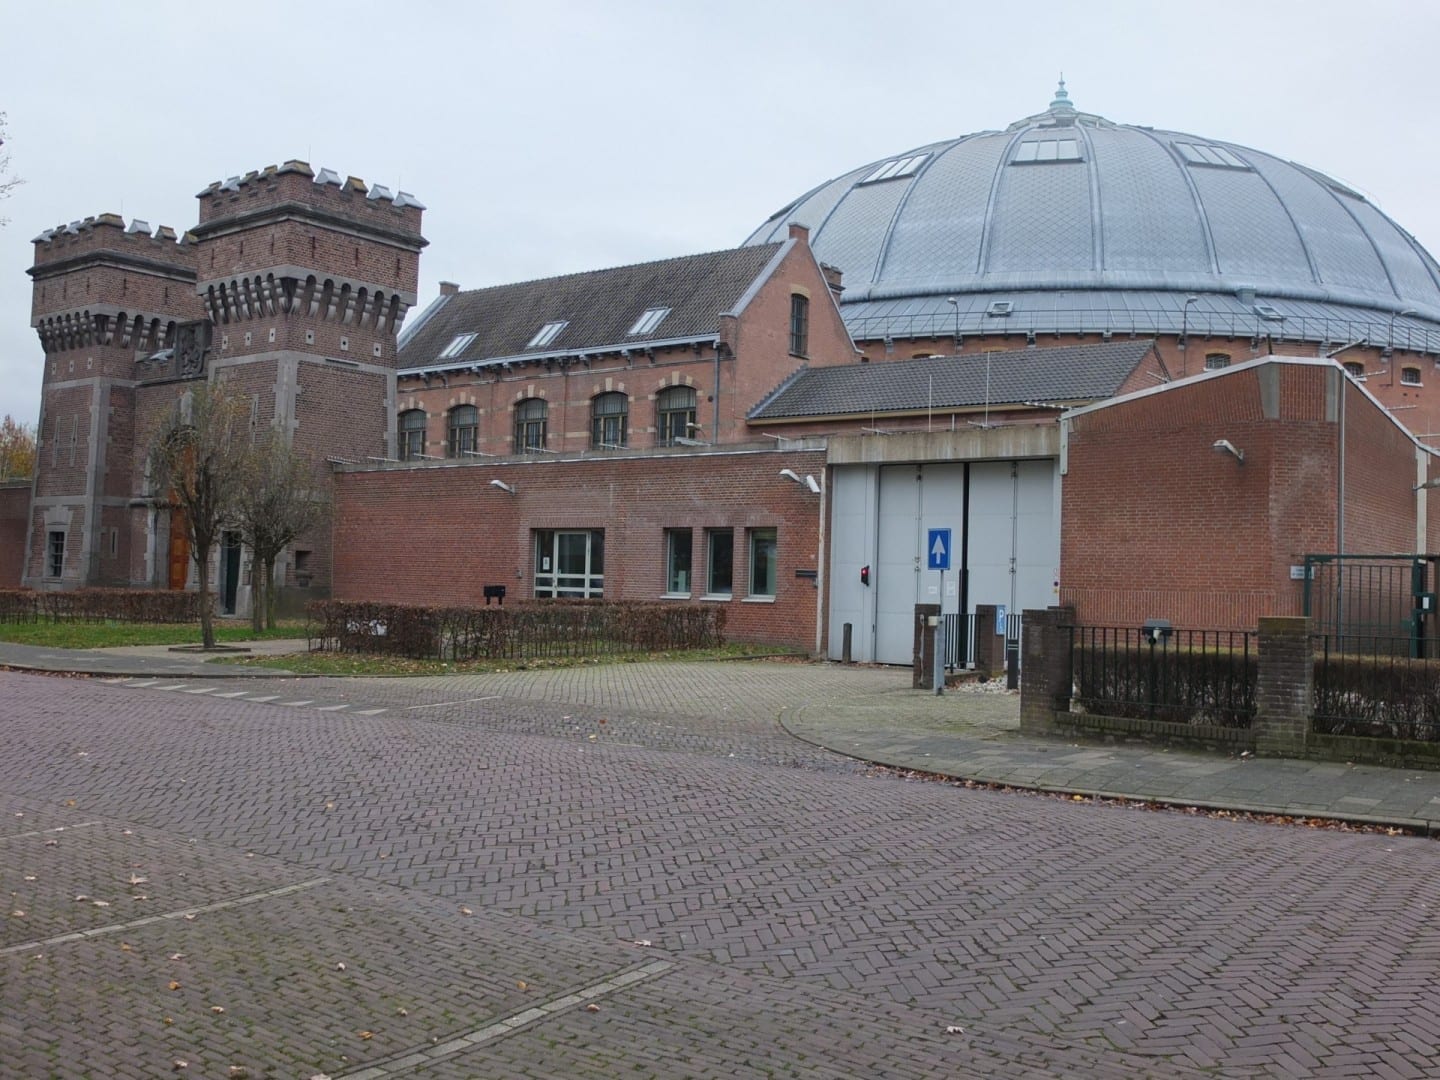 Cúpula de la prisión vista desde el Nassausingel Breda Países Bajos